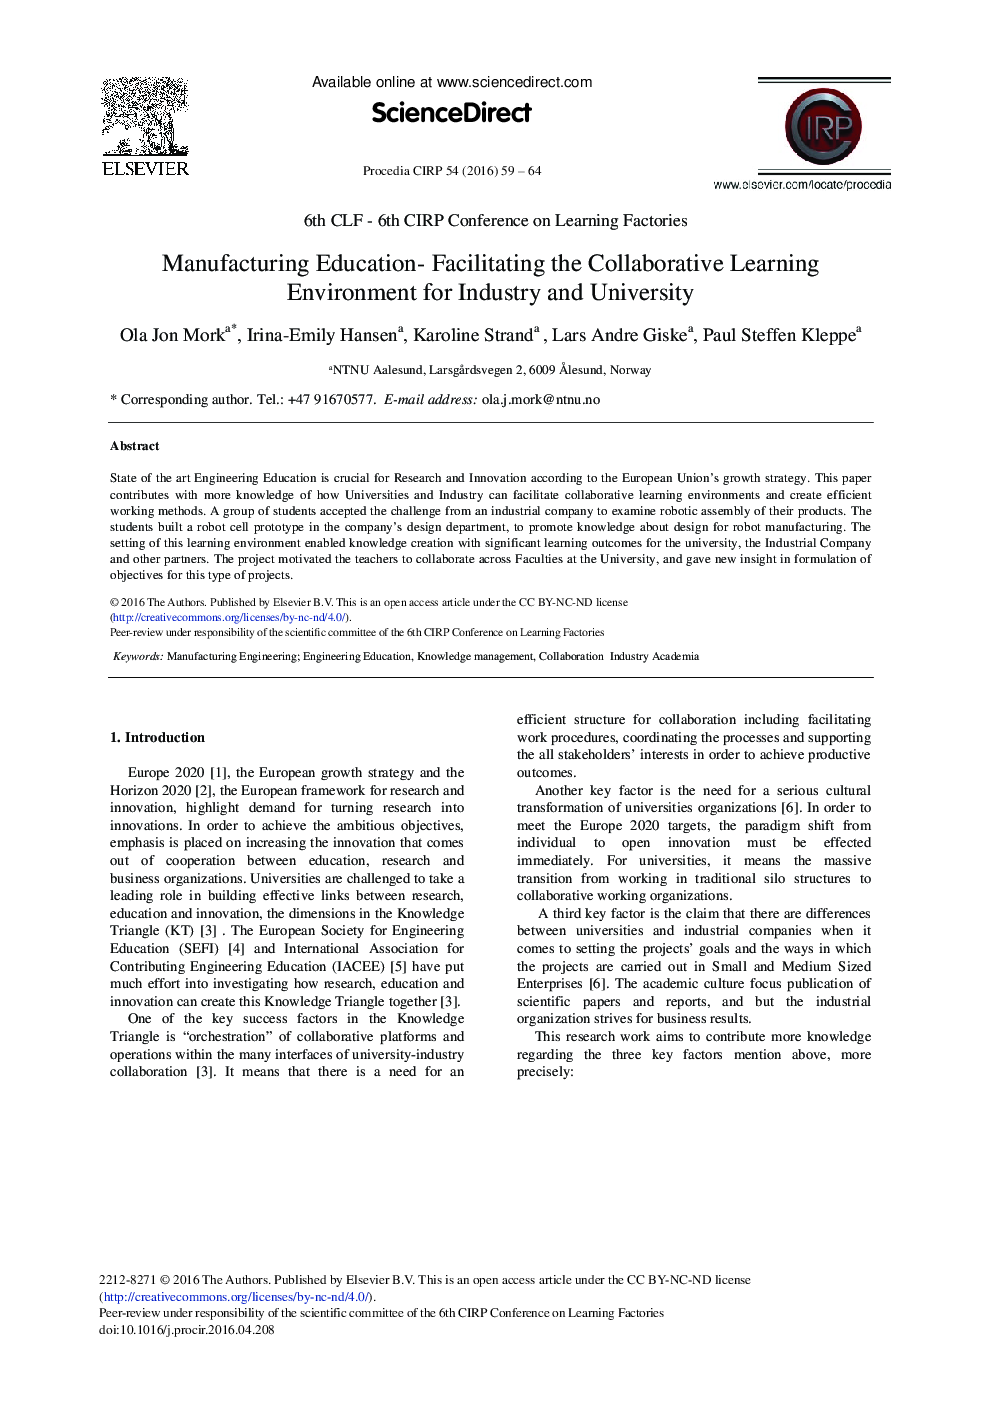 آموزش و پرورش تولید - تسهیل محیط یادگیری همکاری برای صنعت و دانشگاه 